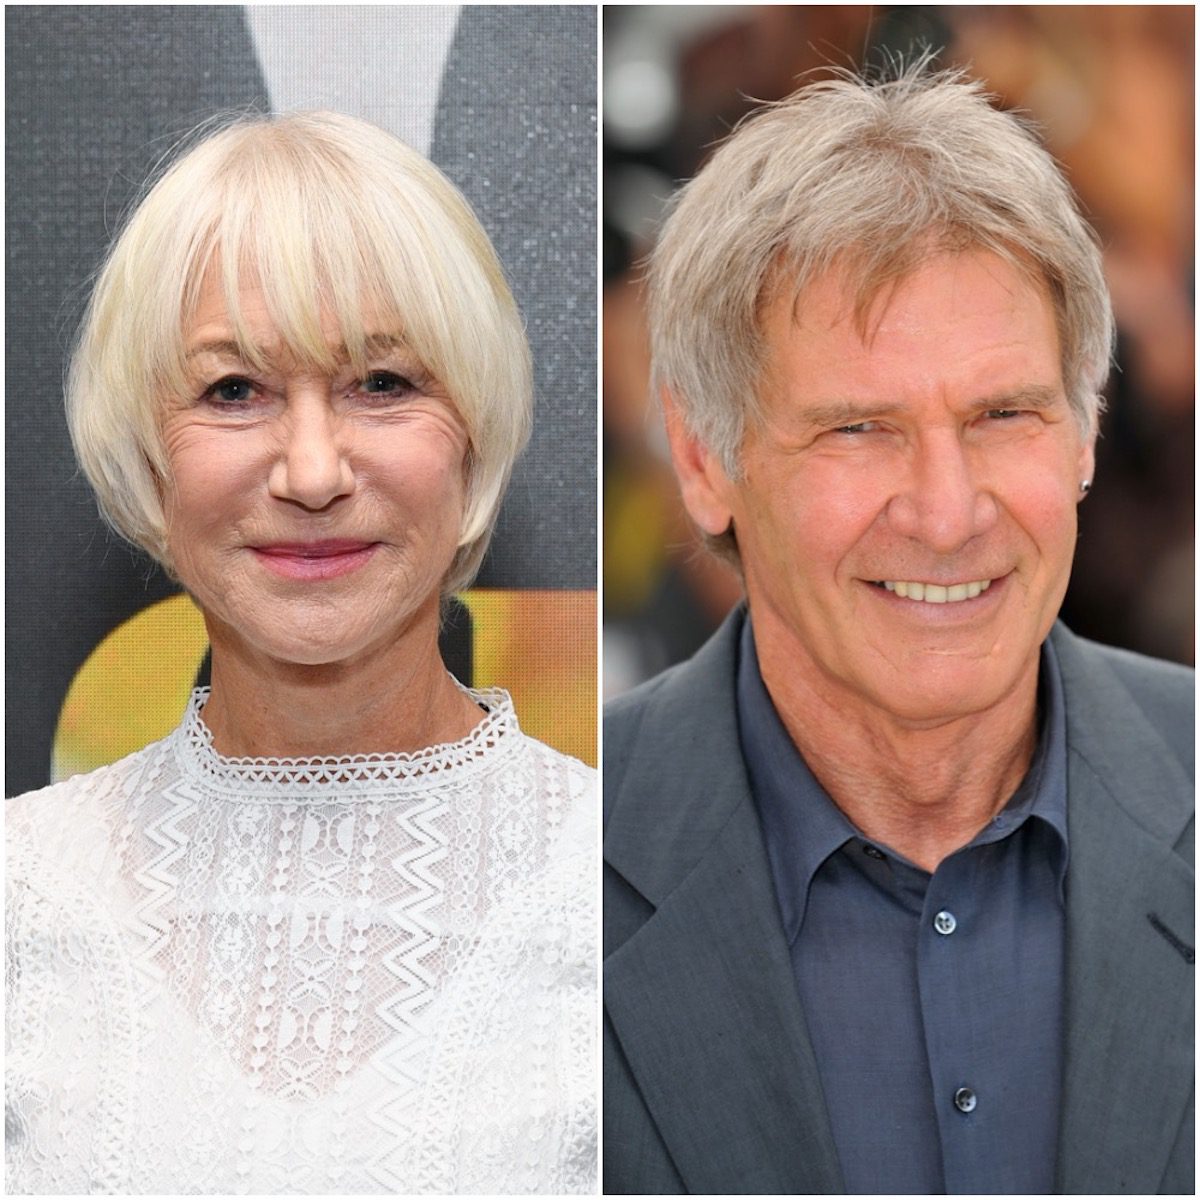 Harrison Ford és Helen Mirren főszereplésével jön egy új nagyszabású sorozat